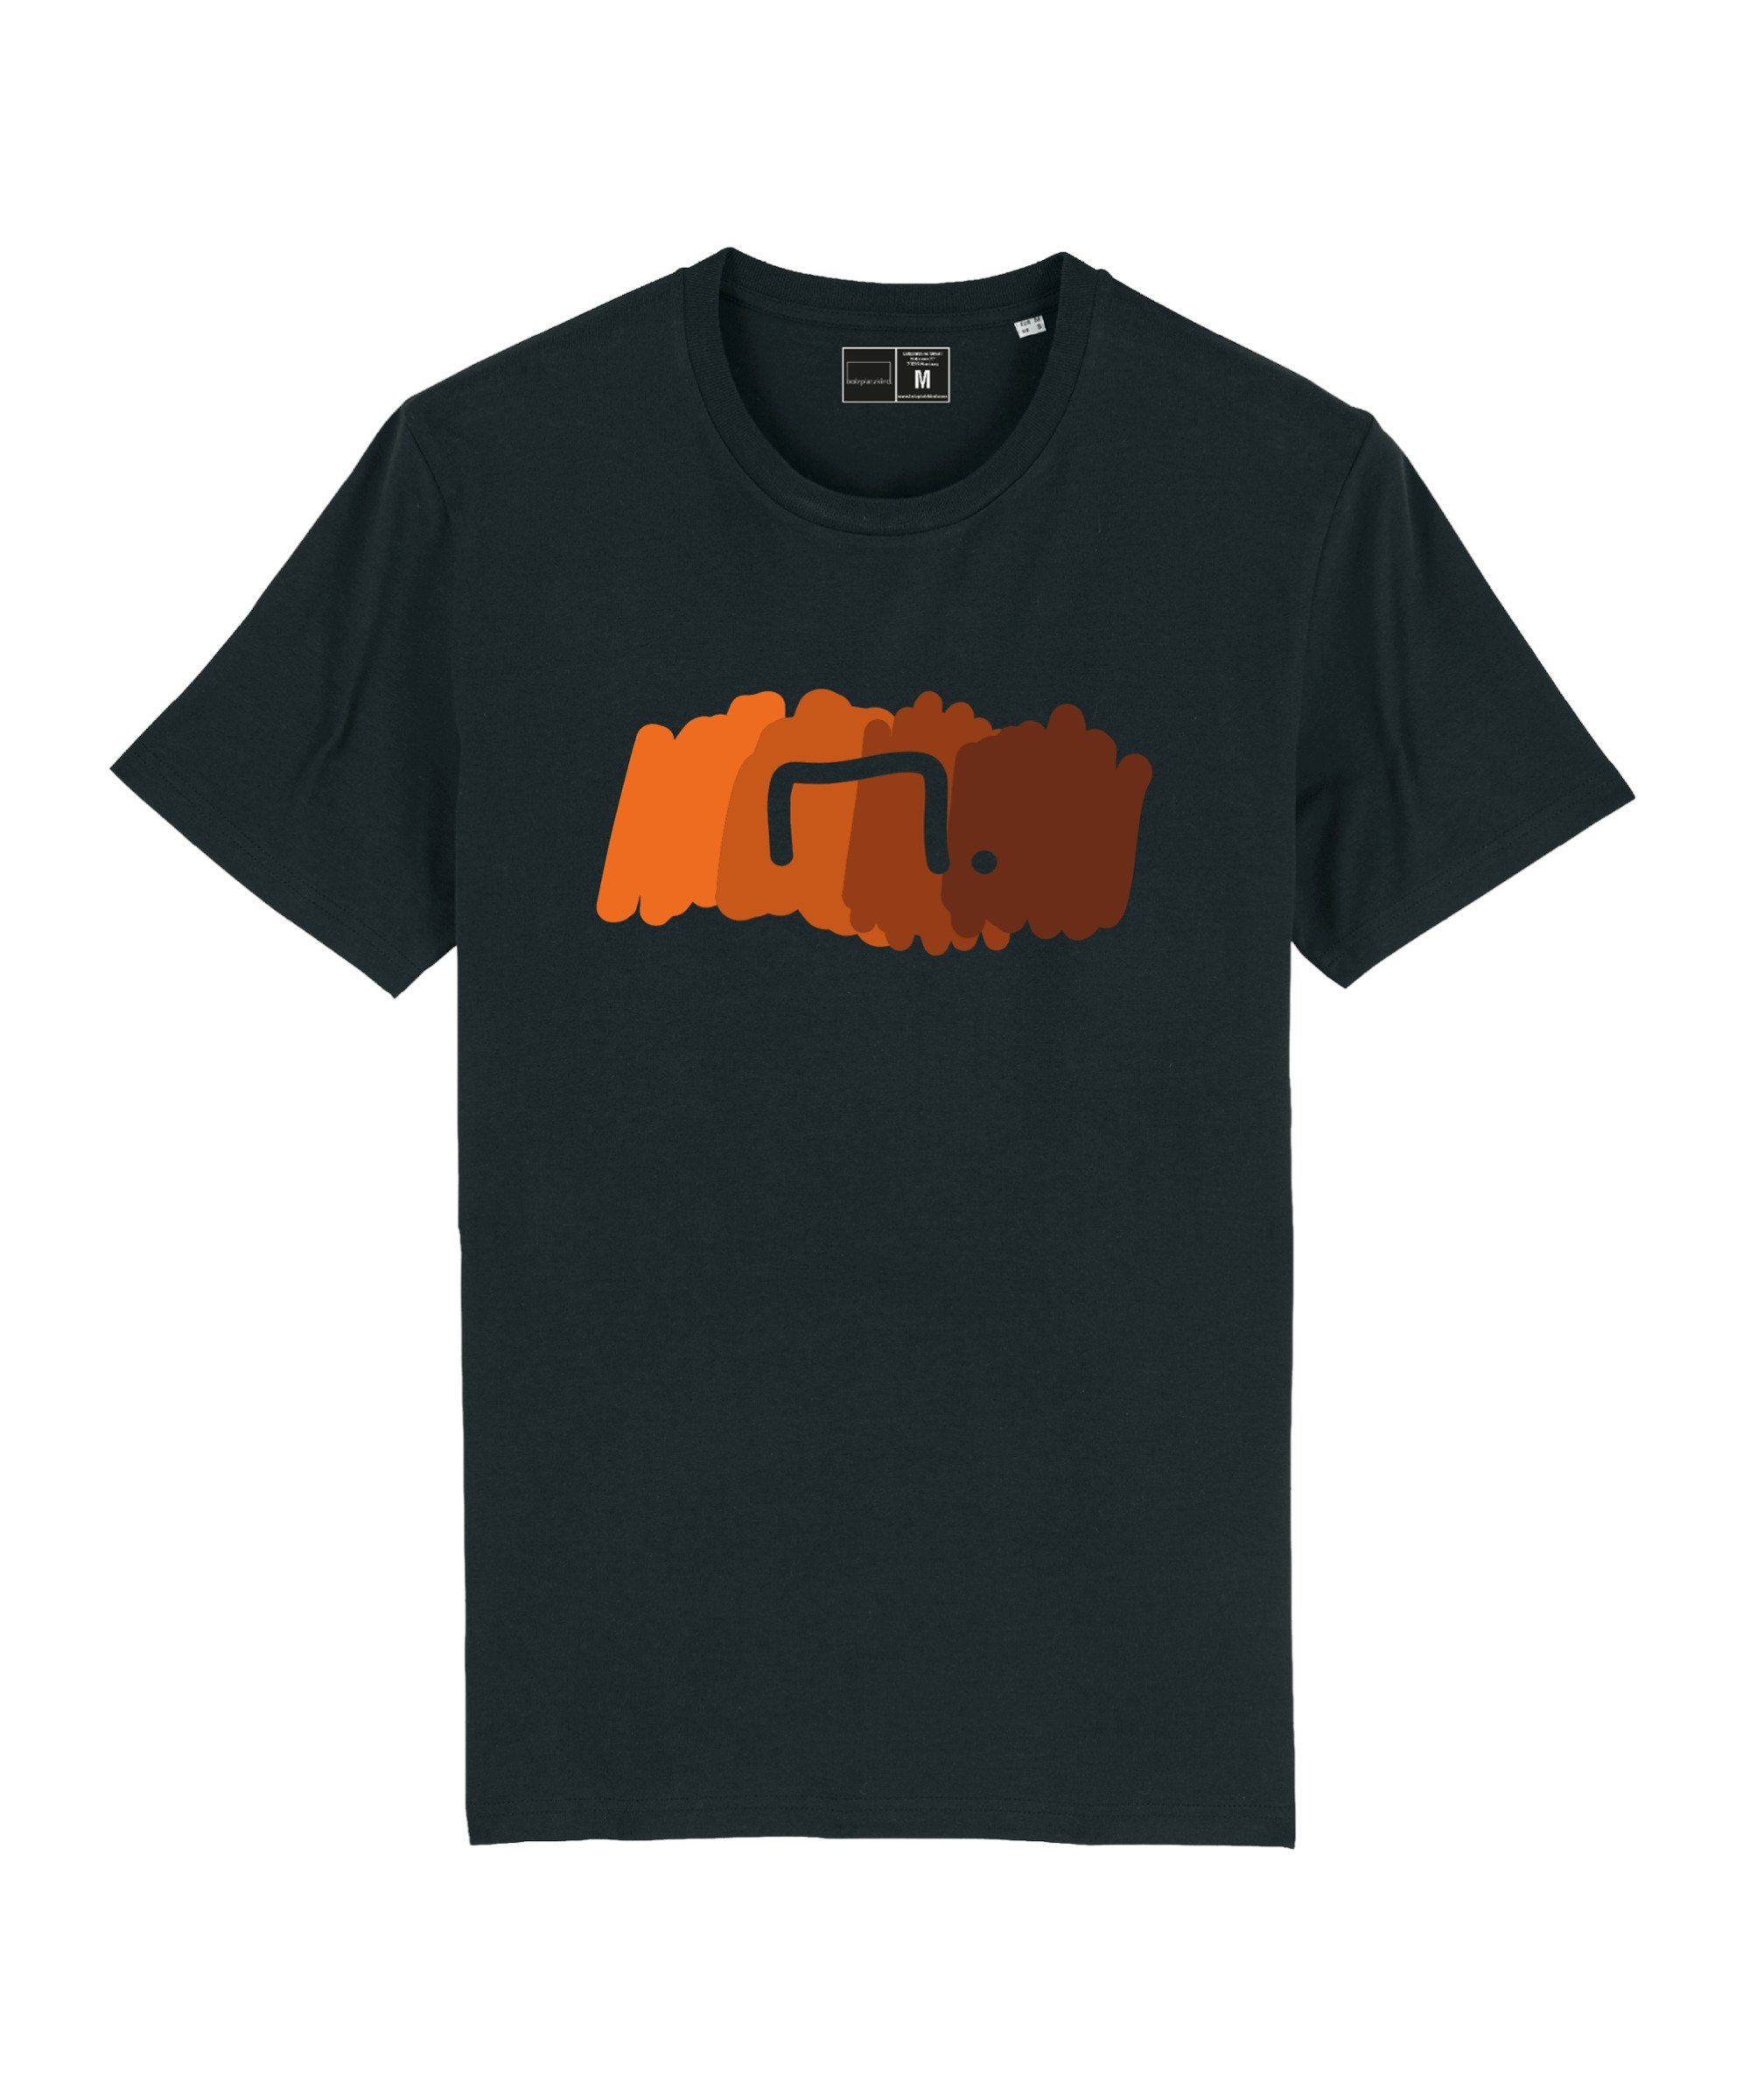 Bolzplatzkind T-Shirt "Free" T-Shirt Nachhaltiges schwarzorange Produkt